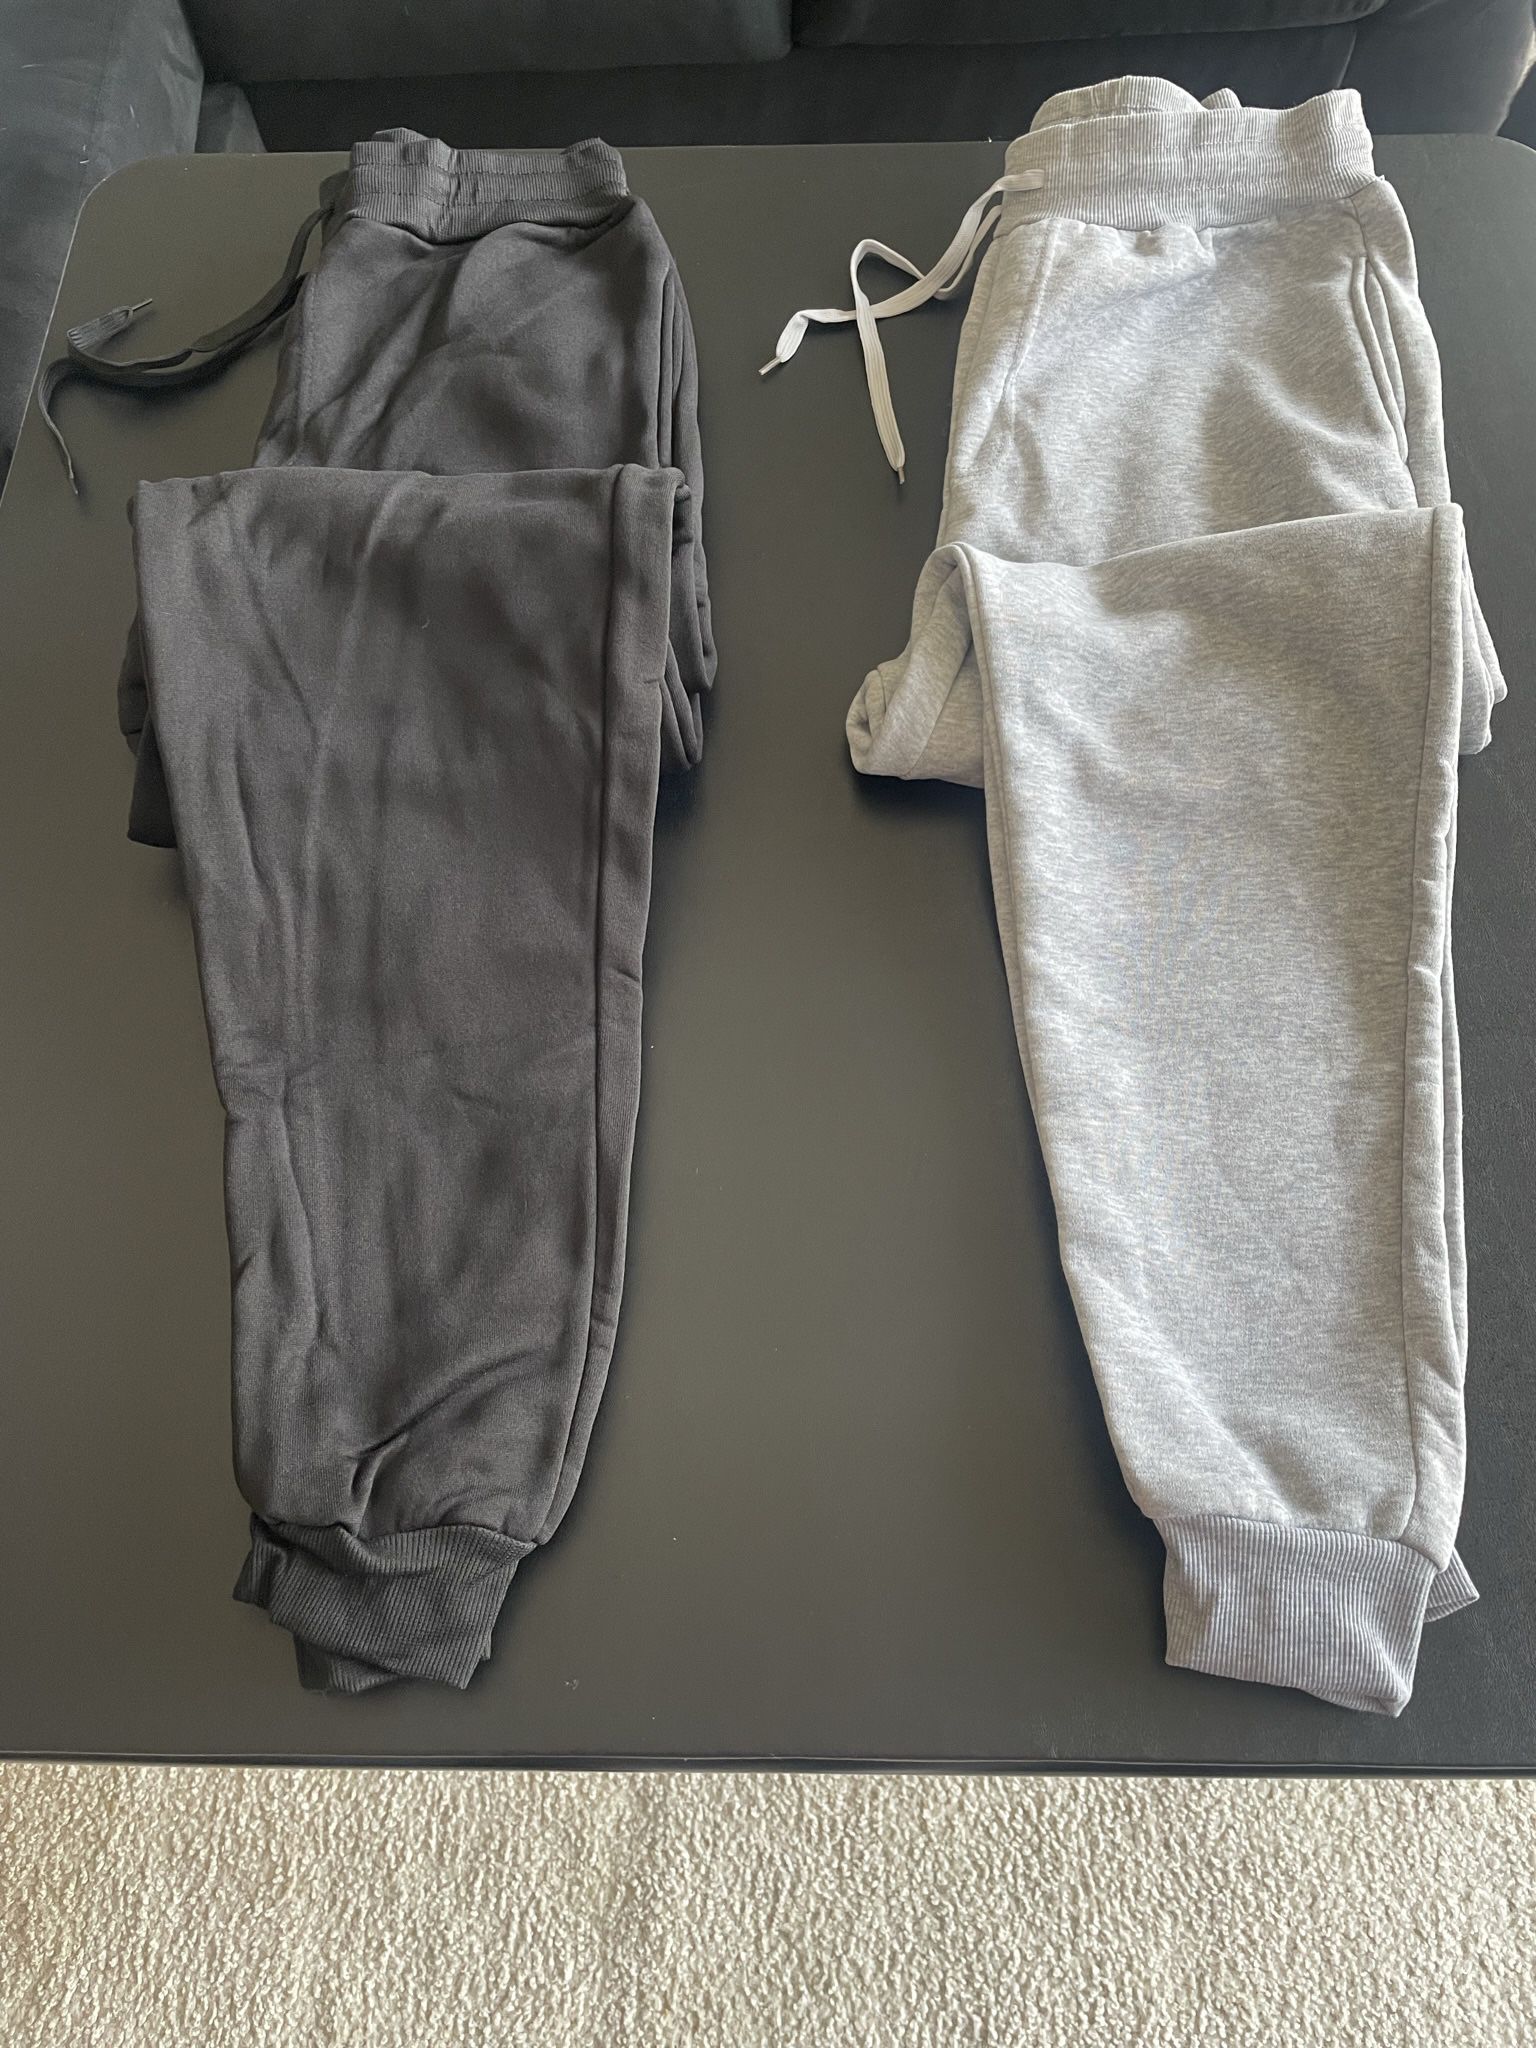 Sweatpants And Joggers (size Large X-Large 2xlarge)